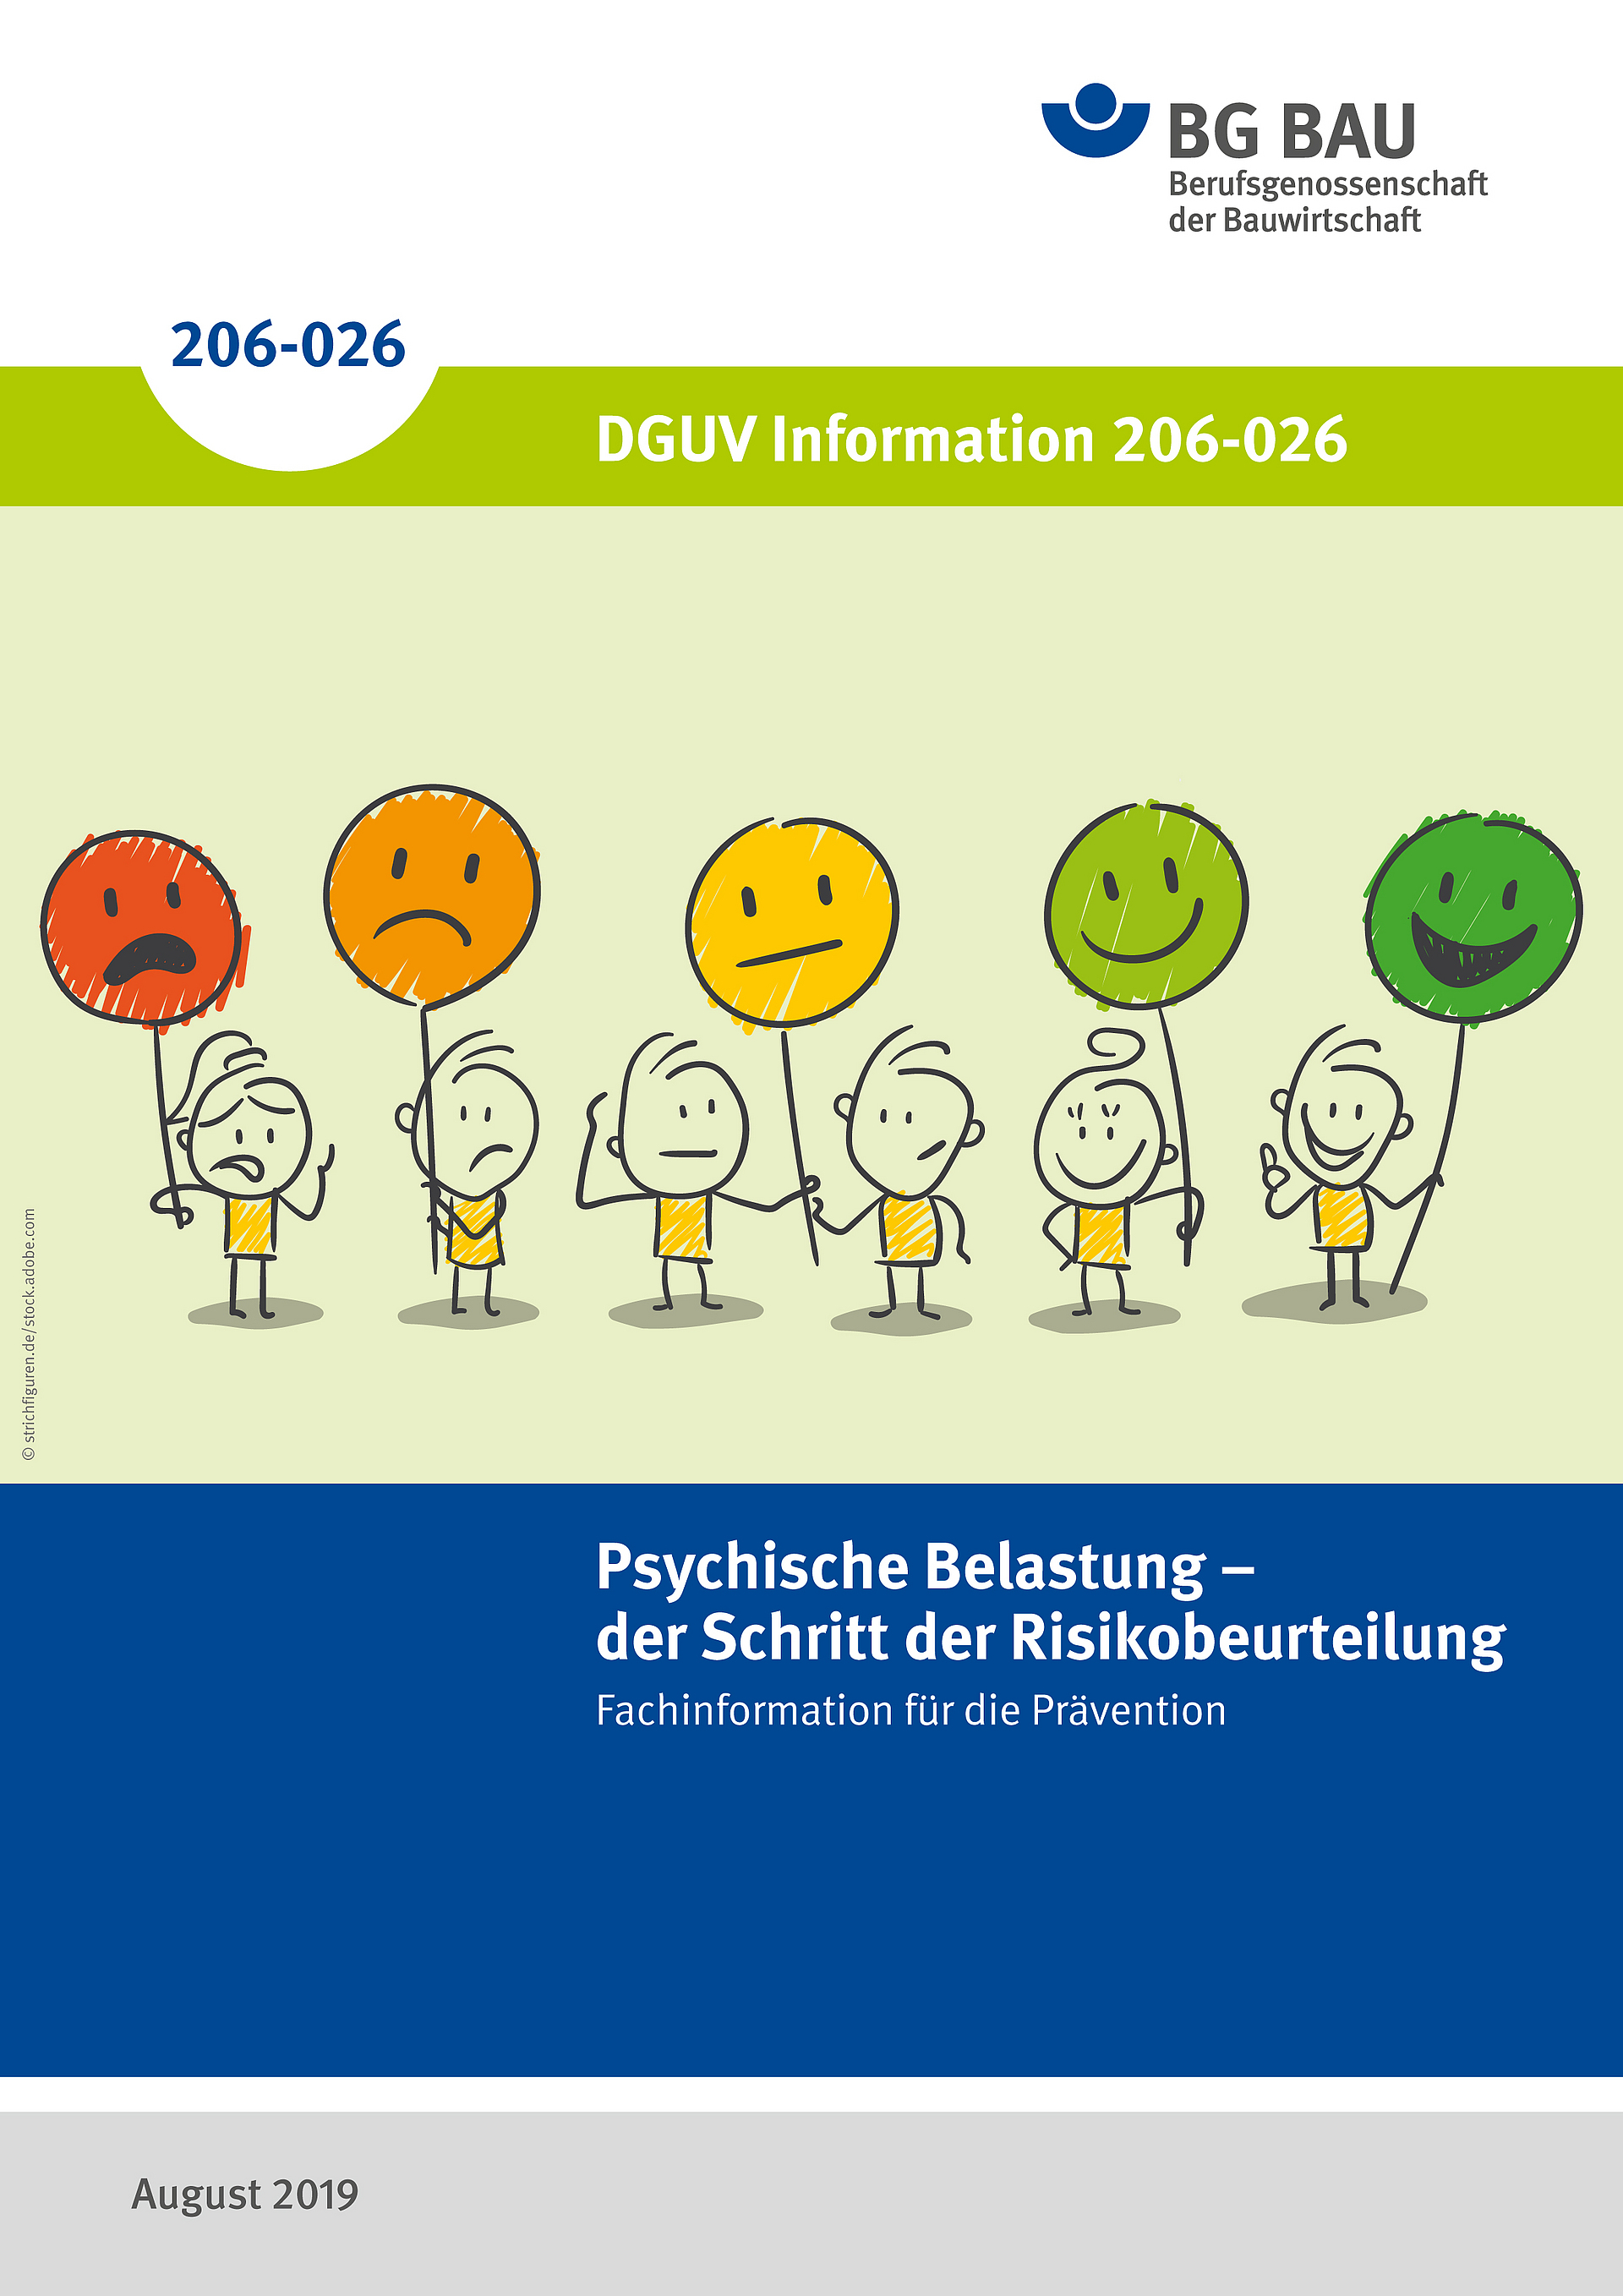 DGUV Information 206-026: Psychische Belastung - der Schritt der Risikobeurteilung